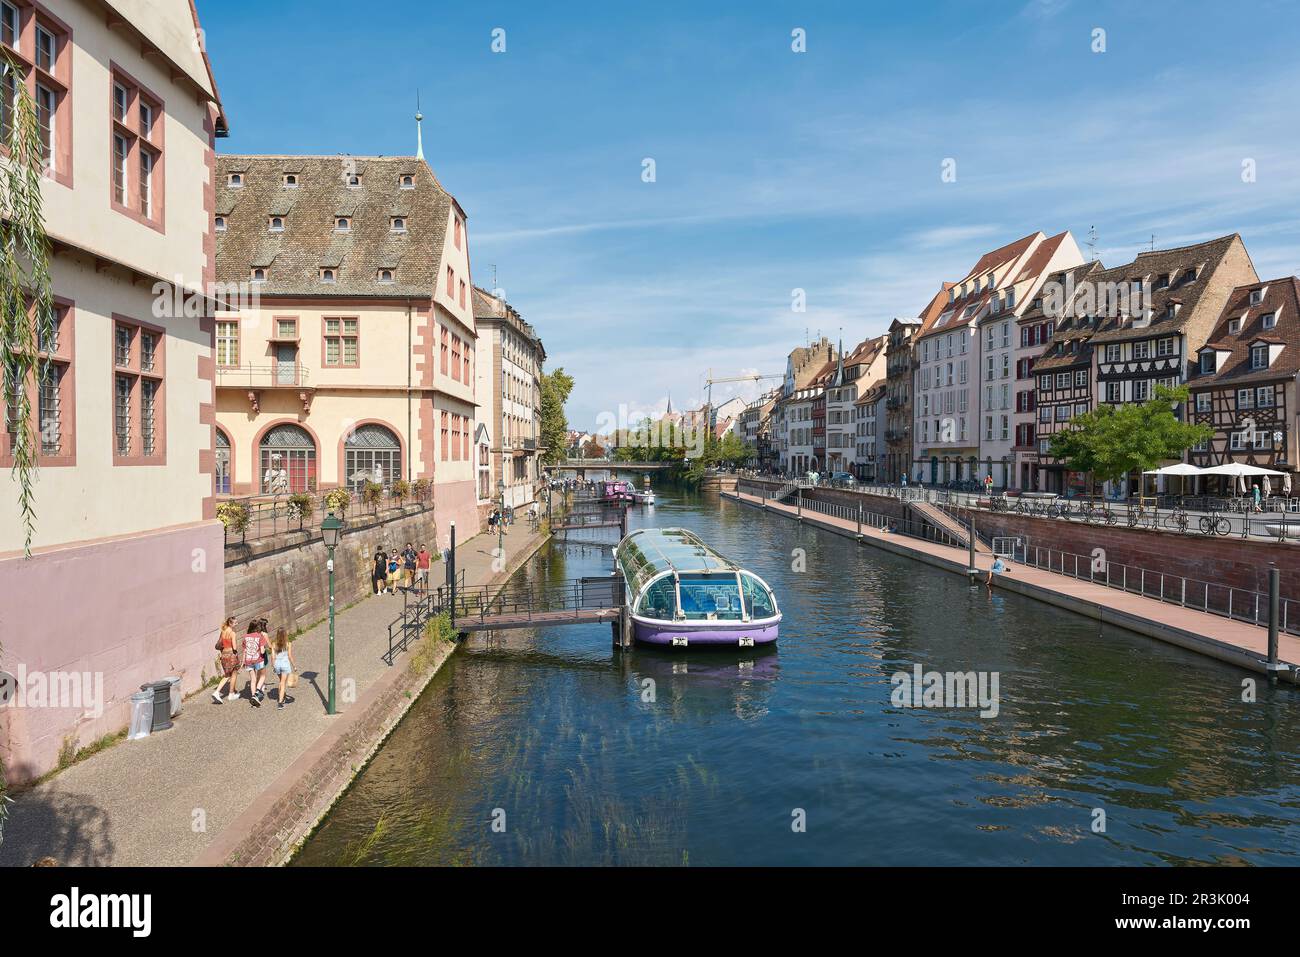 La vieille ville de Strasbourg en France avec une étape d'atterrissage pour les bateaux d'excursion sur la rivière Ill Banque D'Images